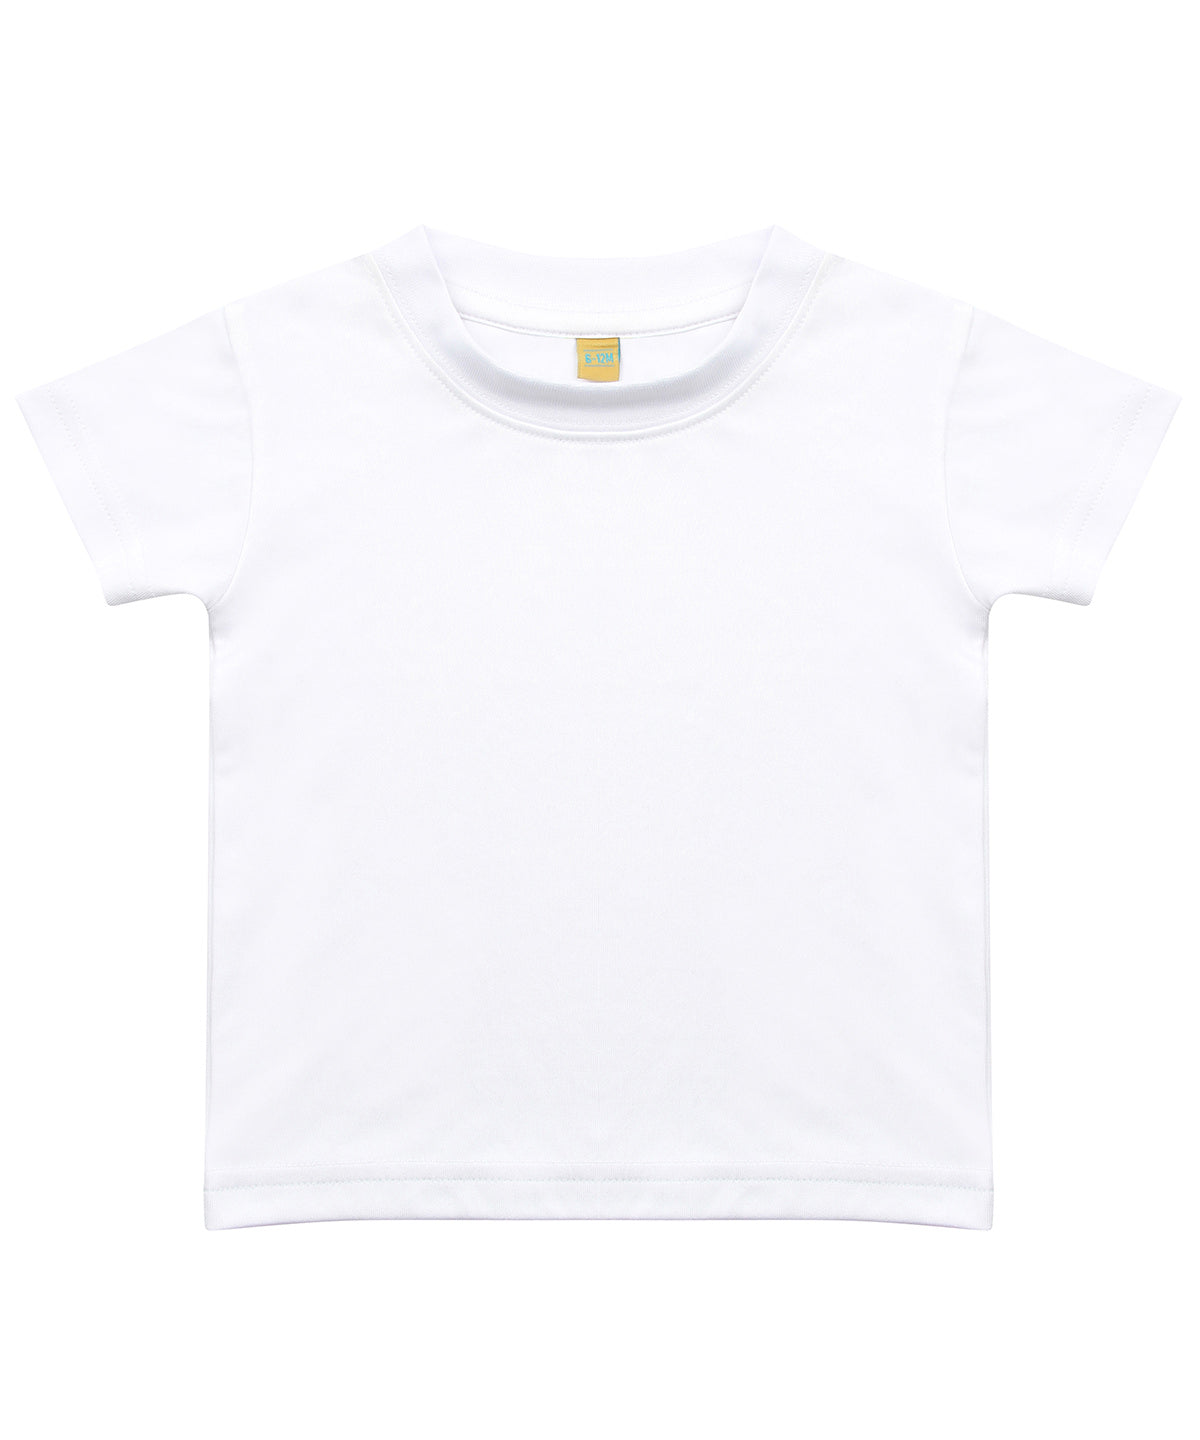 Stuttermabolir - Baby/toddler T-shirt